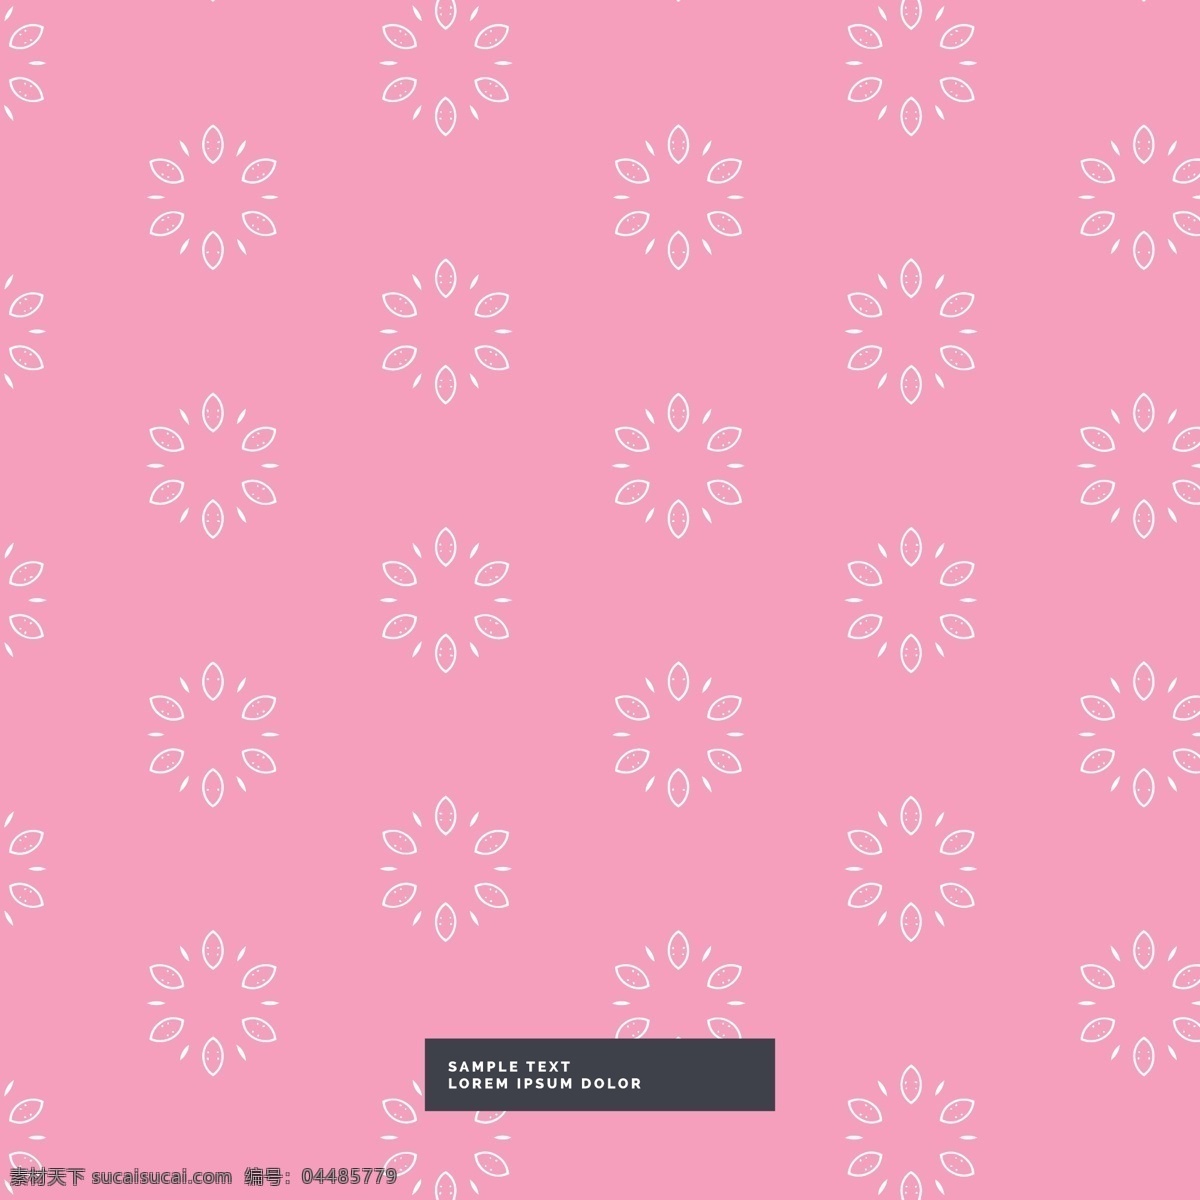 粉红色 背景 花卉 图案 花 模式 抽象背景 抽象 自然 模板 春季 装饰 花卉背景 花卉图案 植物 马赛克